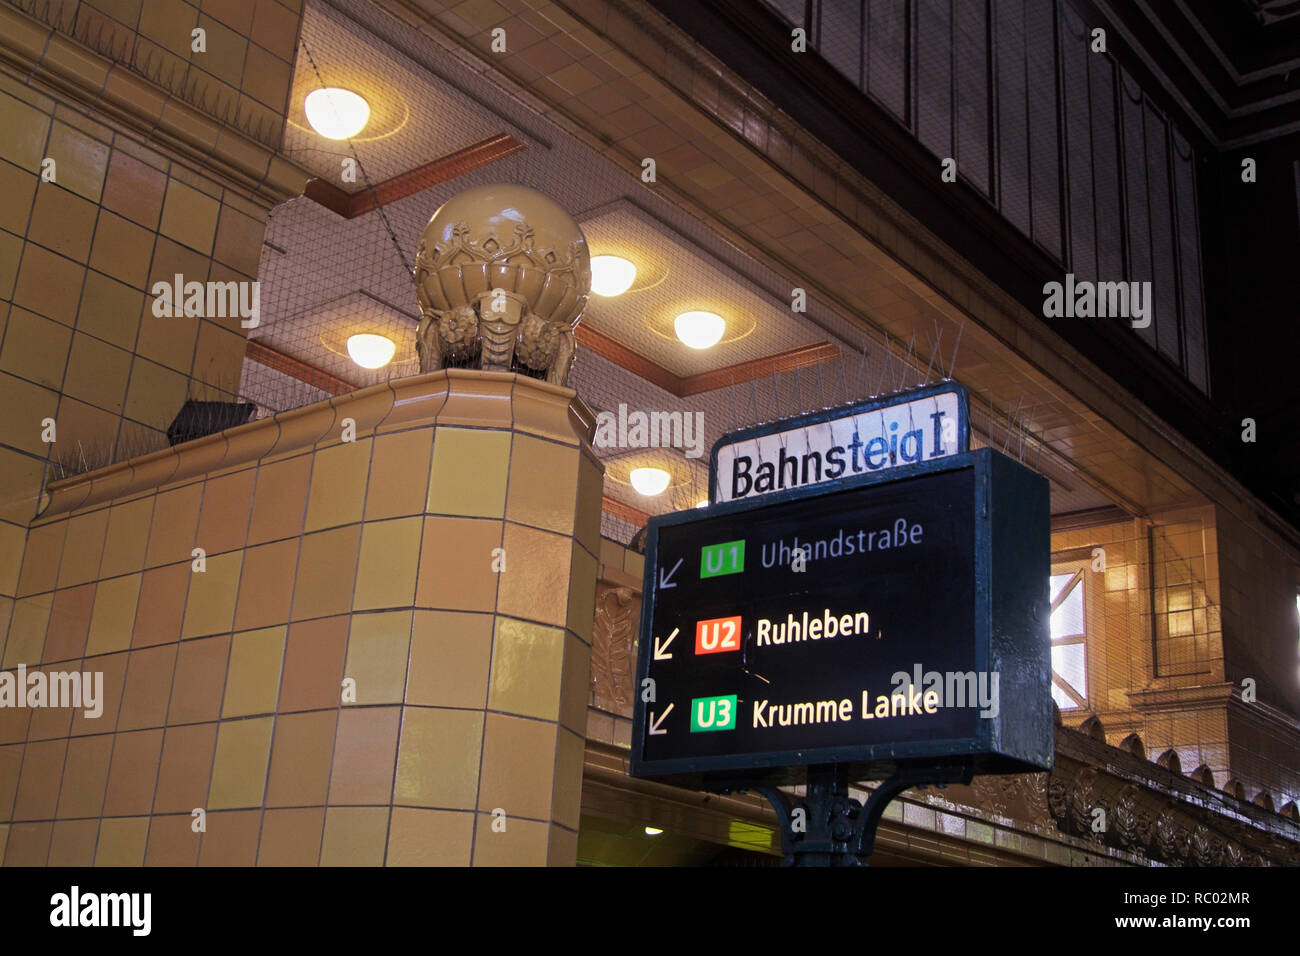 U-Bahnhof Wittenbergplatz, Berlino-schöneberg, Deutschland, Europa | stazione metropolitana Wittenbergplatz, Berlino-schöneberg, Germania, Europa Foto Stock